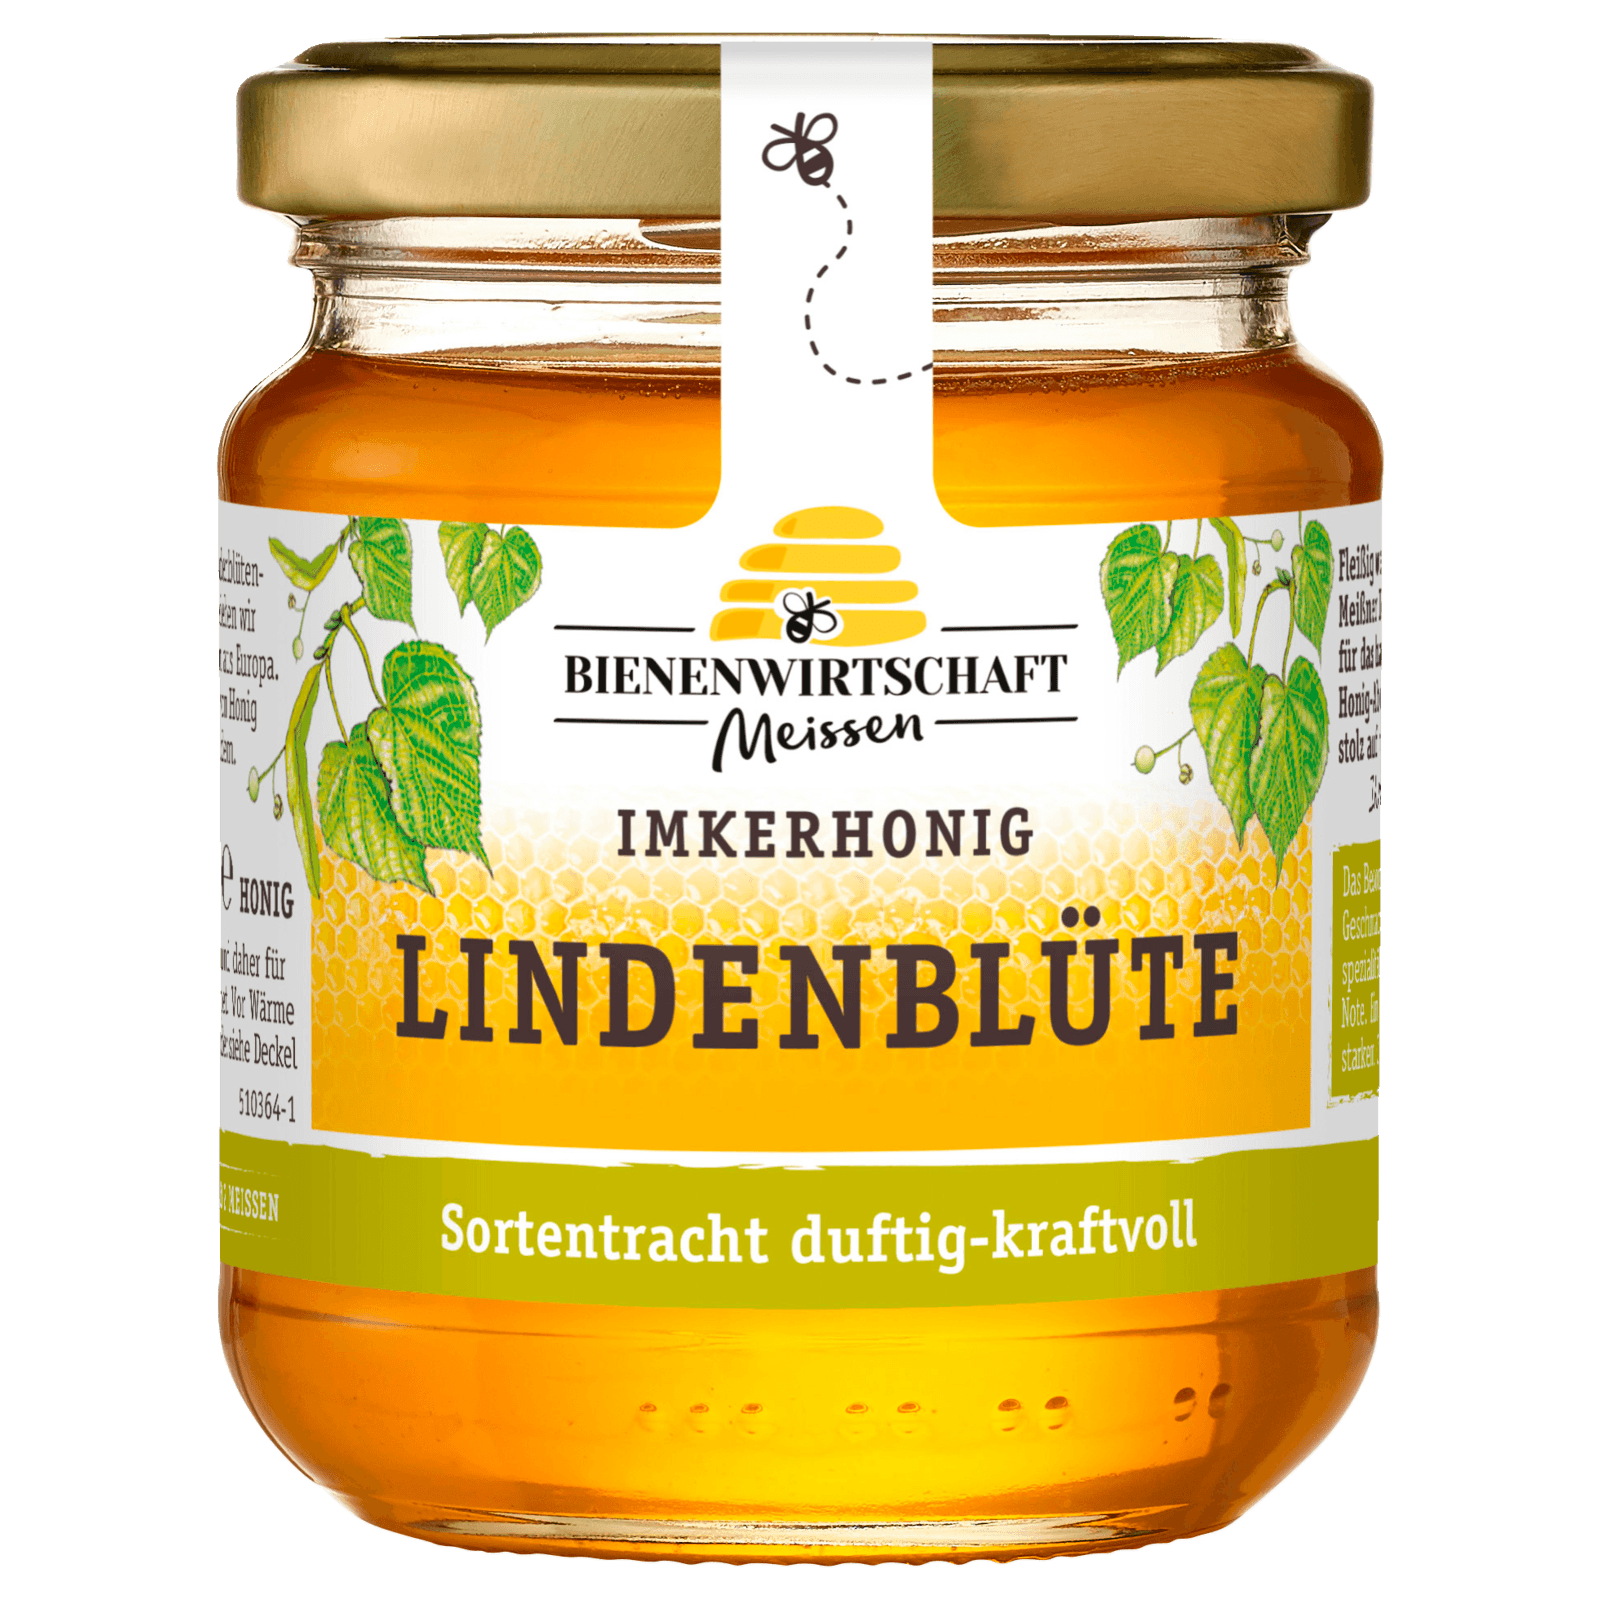 Bienenwirtschaft Meissen Imkerhonig duftige Lindenblüte 250g  für 3.39 EUR